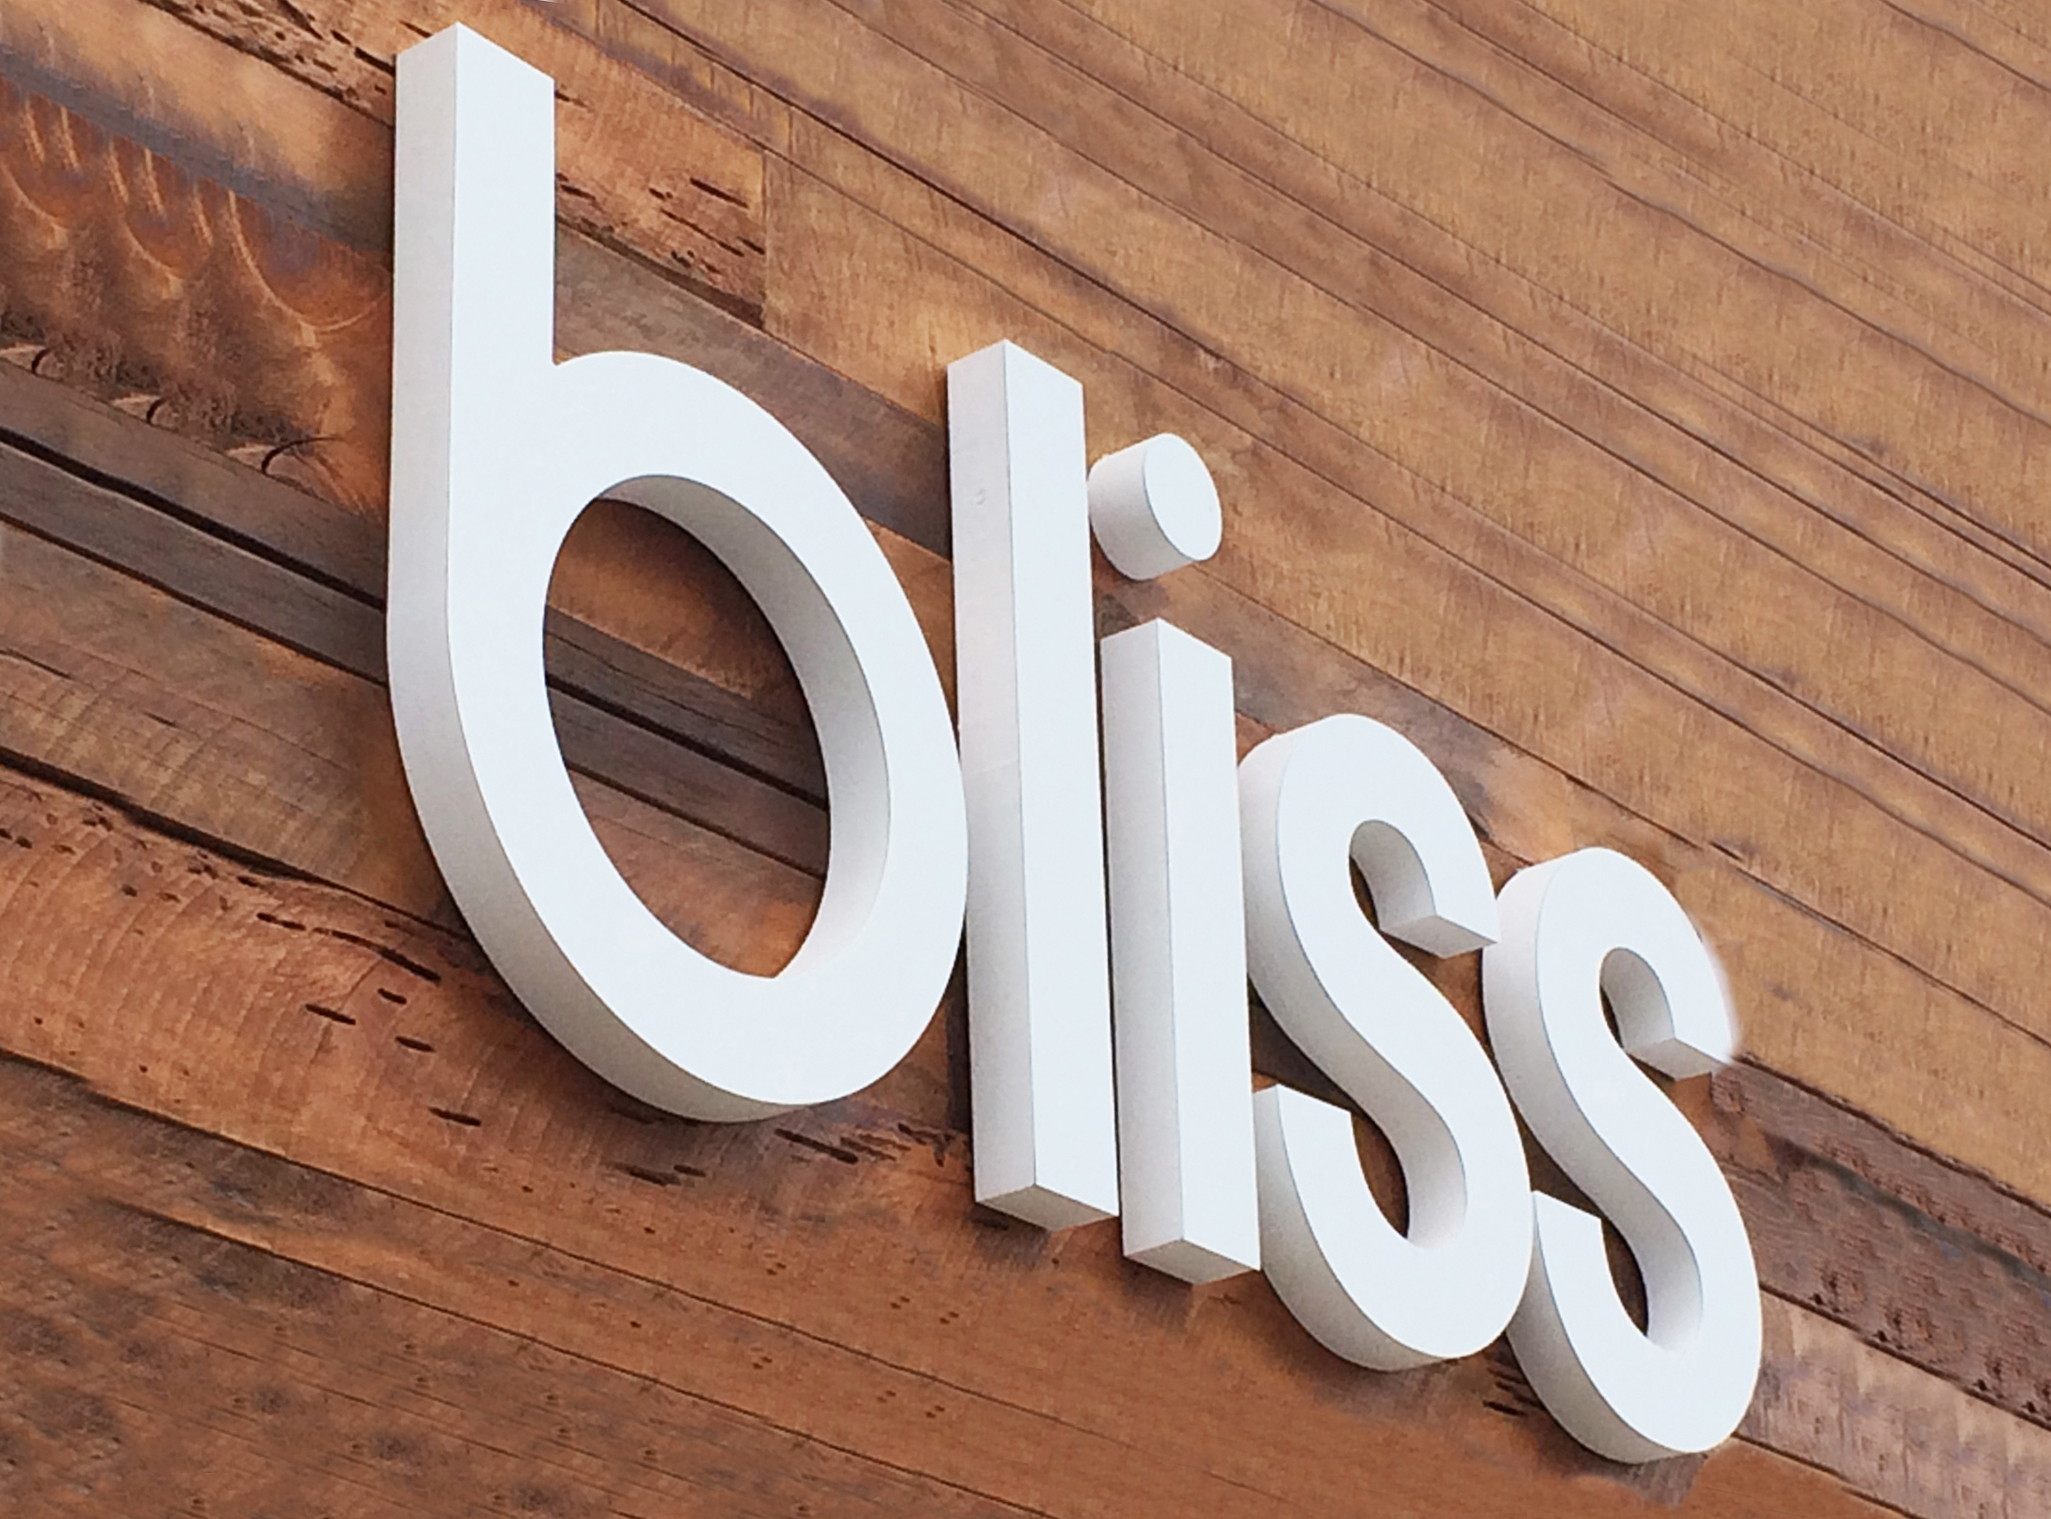 Bliss sign-EDIT2.jpg